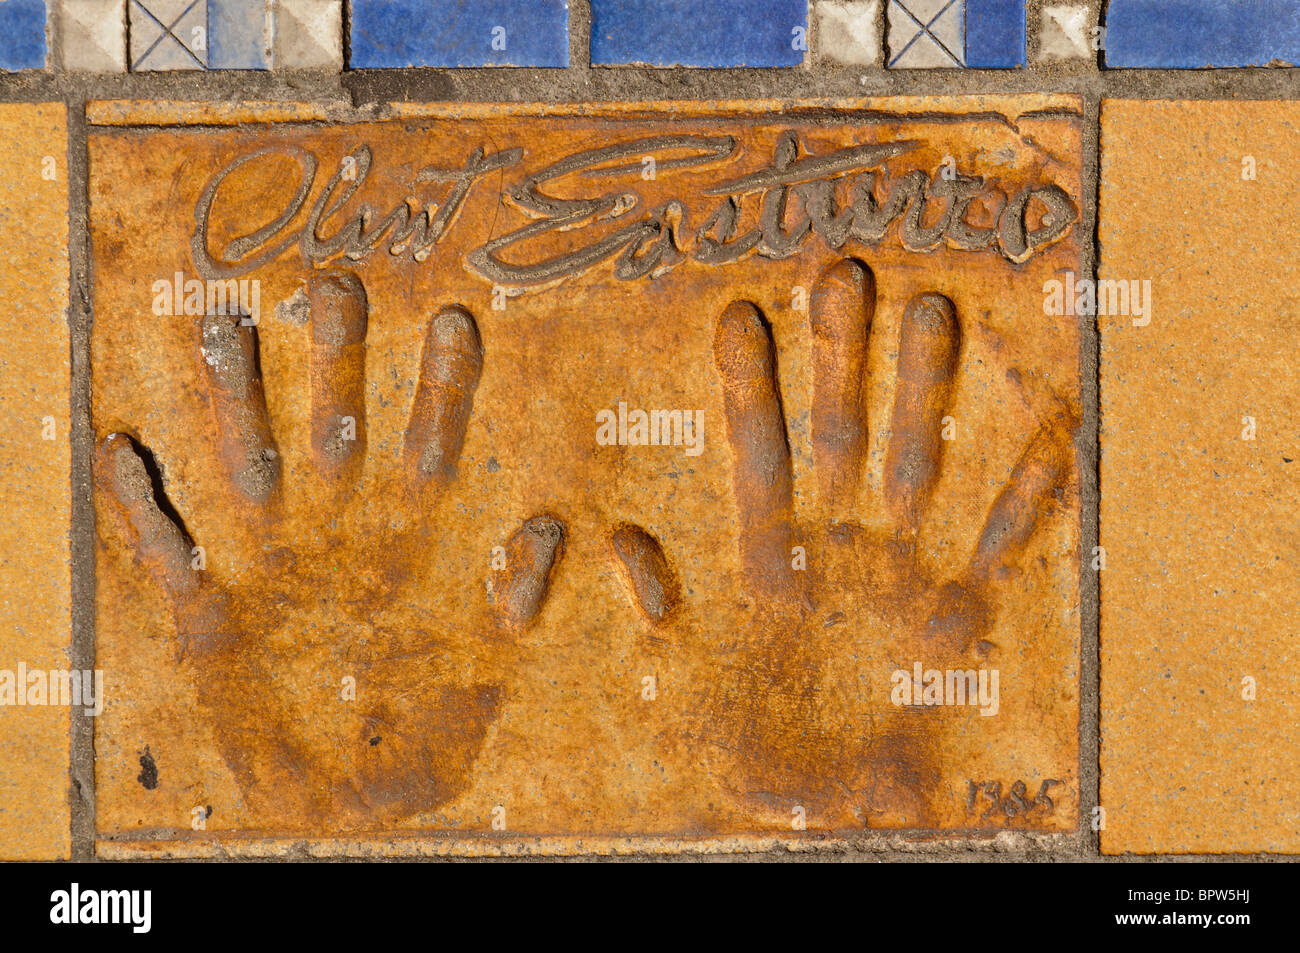 Handprint argile de l'acteur/réalisateur Clint Eastwood à l'extérieur du Palais des Festivals et des Congrès, Cannes Banque D'Images